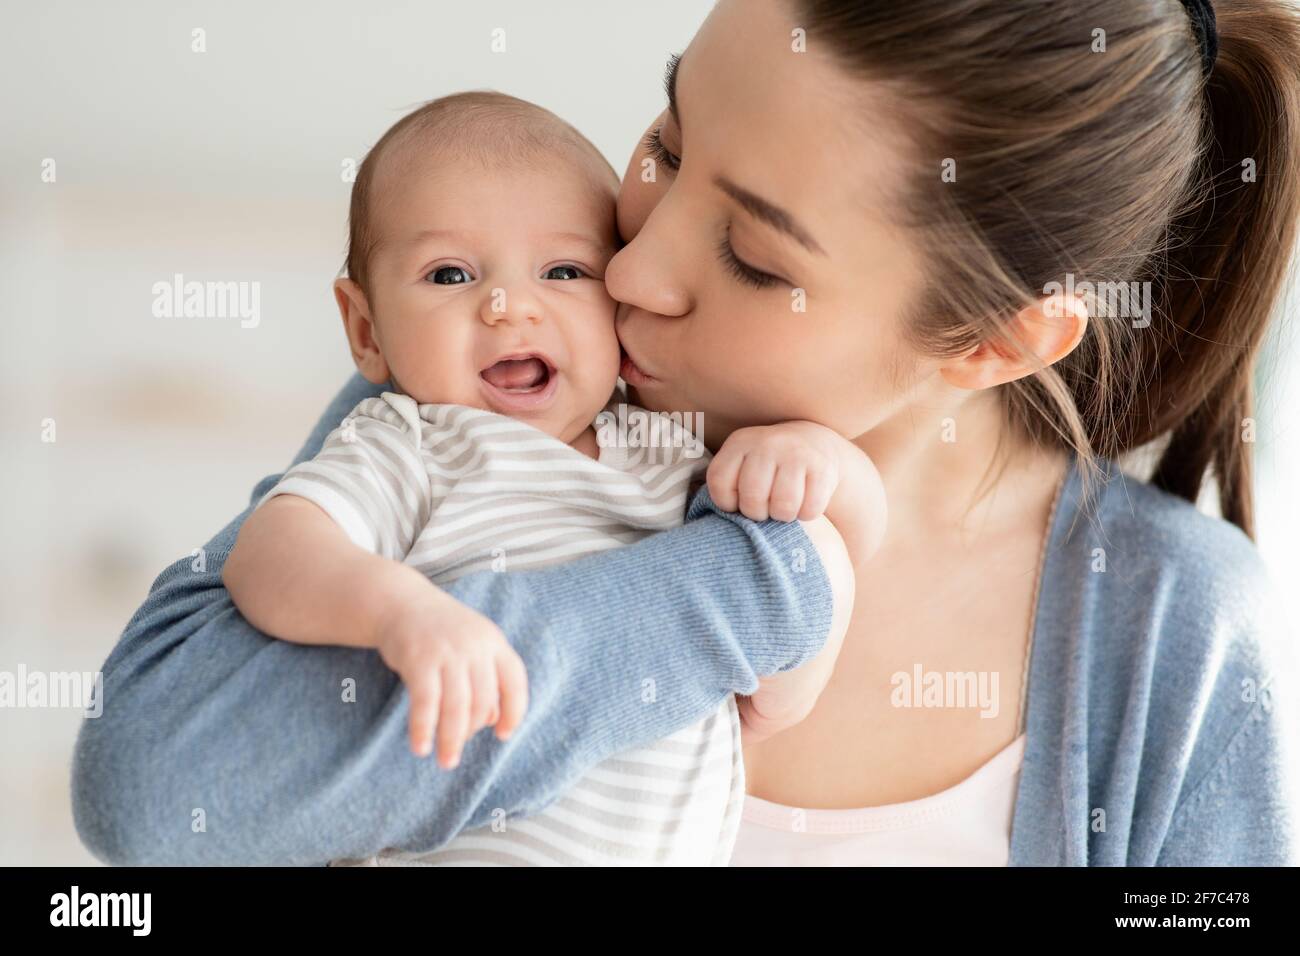 Amour de la mère. Gros plan Portrait de jeune maman qui embrasse son enfant nouveau-né mignon Banque D'Images